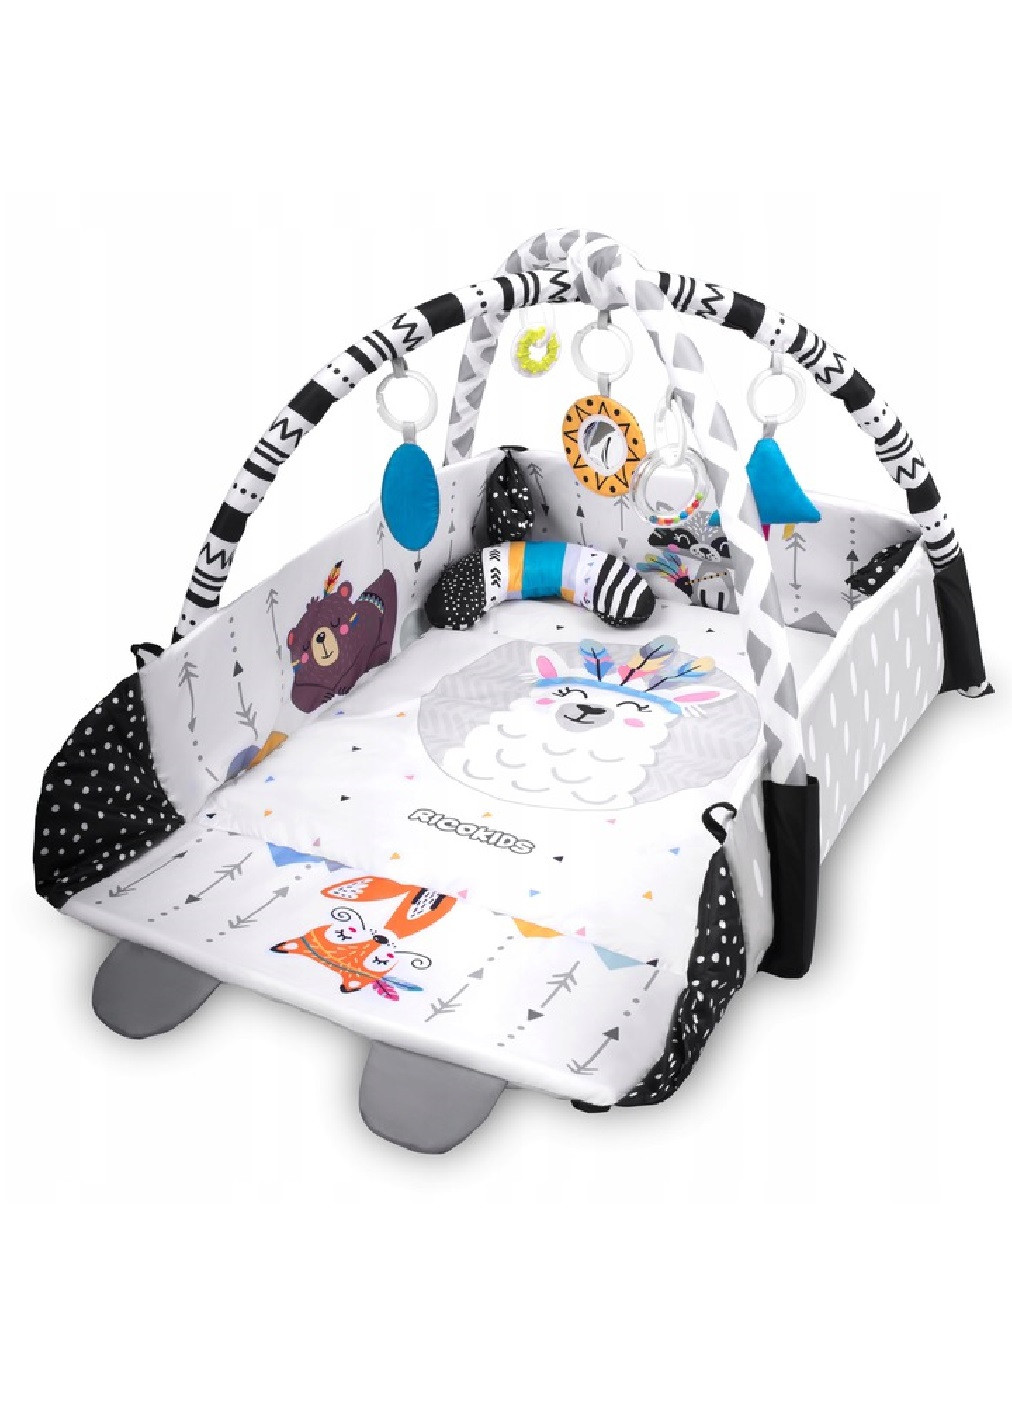 Большой развивающий интерактивный коврик для младенцев малышей детей с 7 игрушками 100х110х53 см (474819-Prob) Unbranded (259906170)